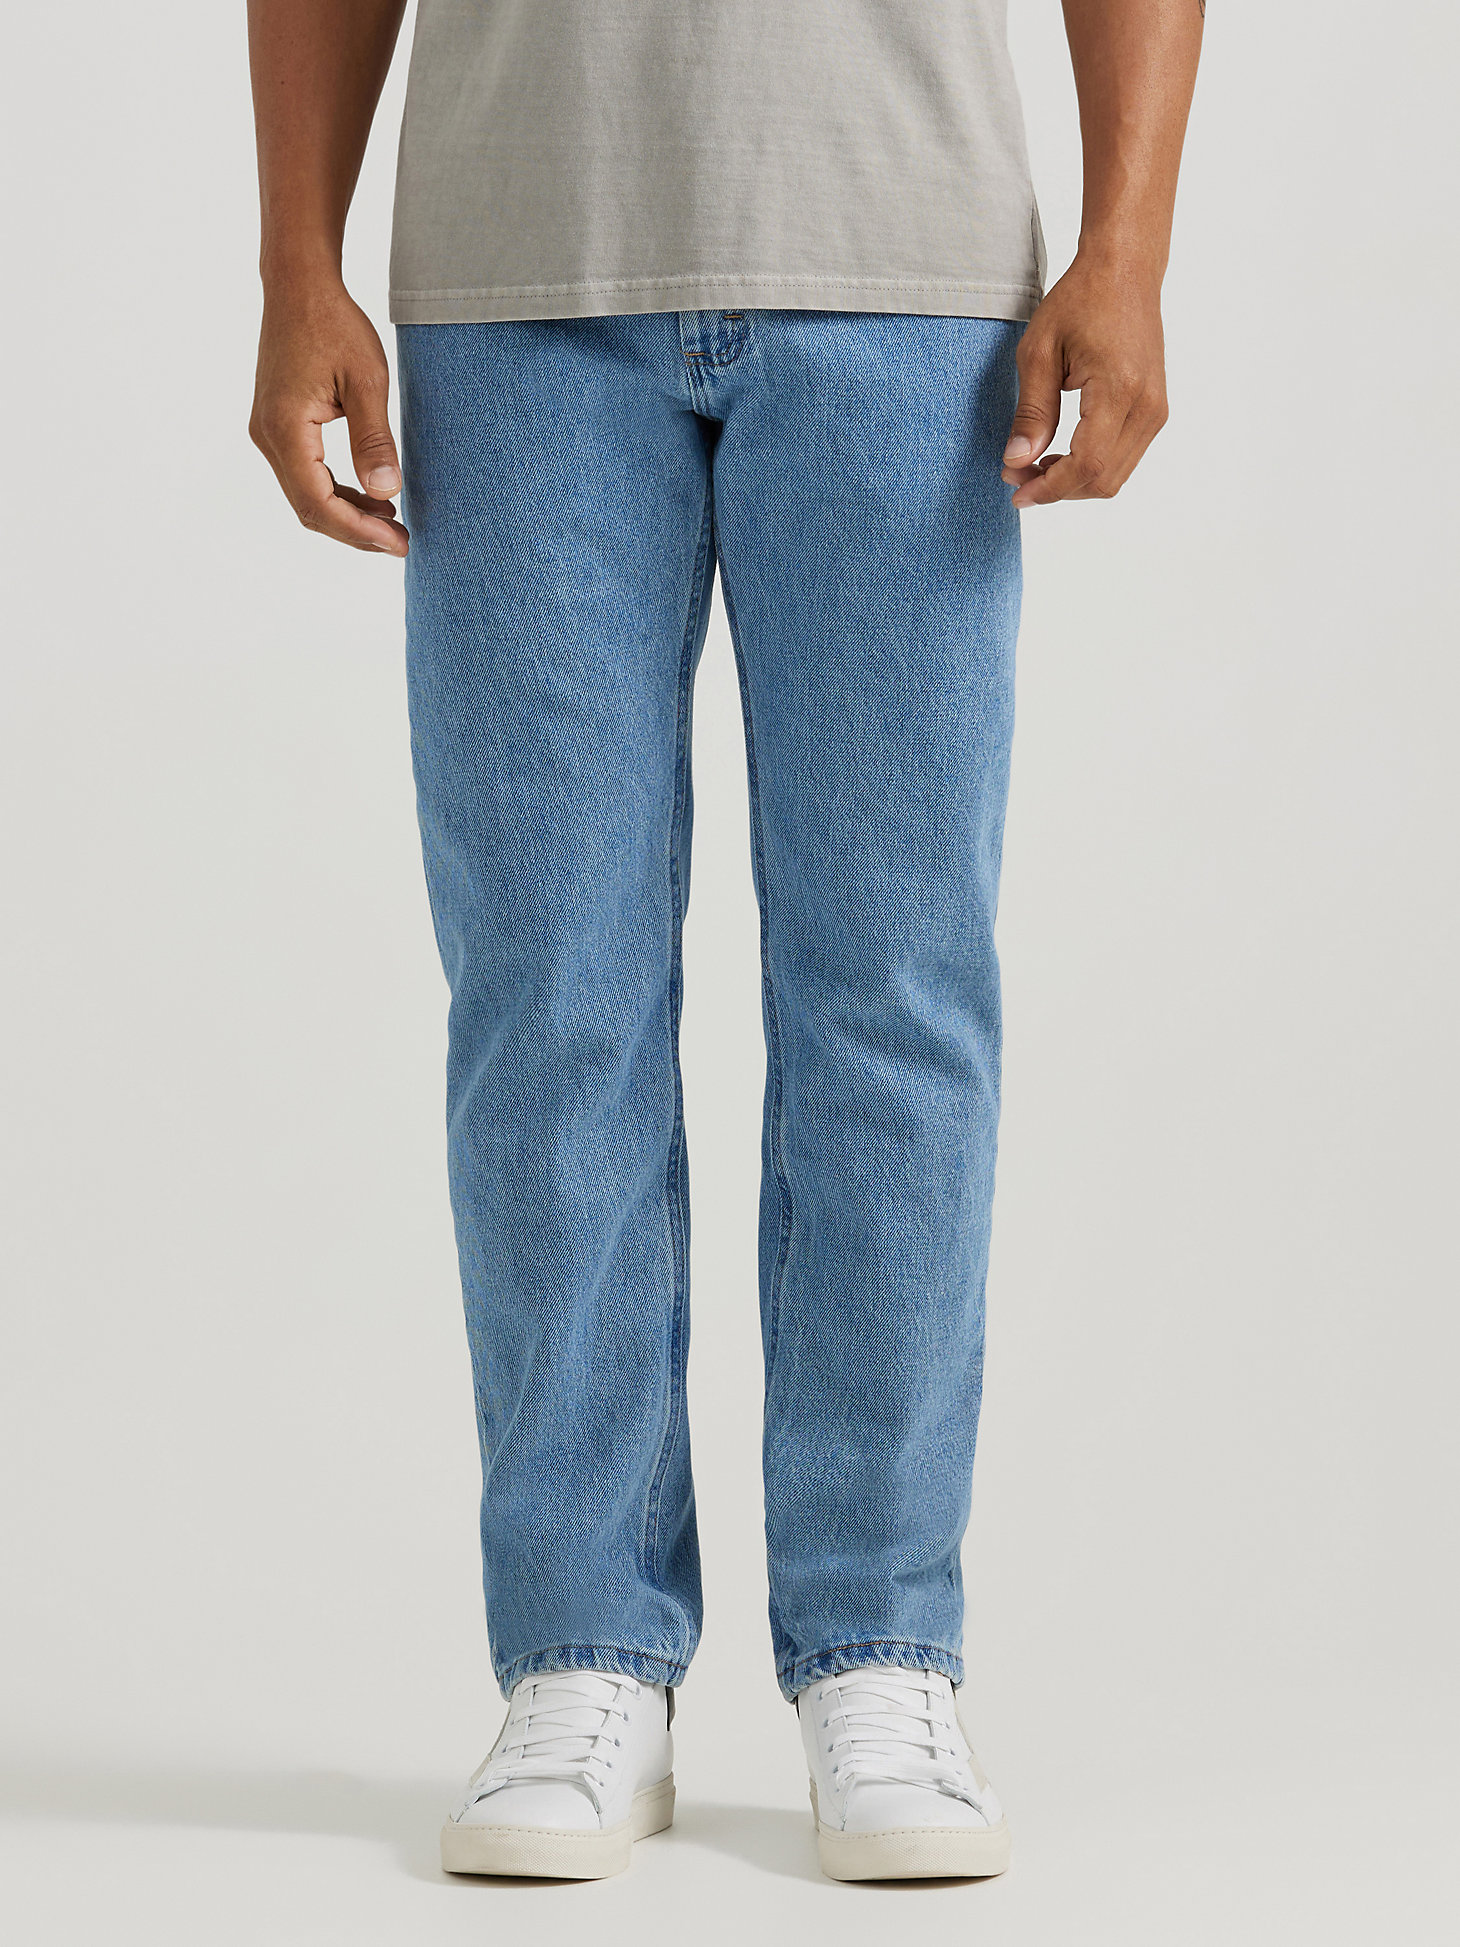 Wrangler Men's Regular Fit' Jeans 